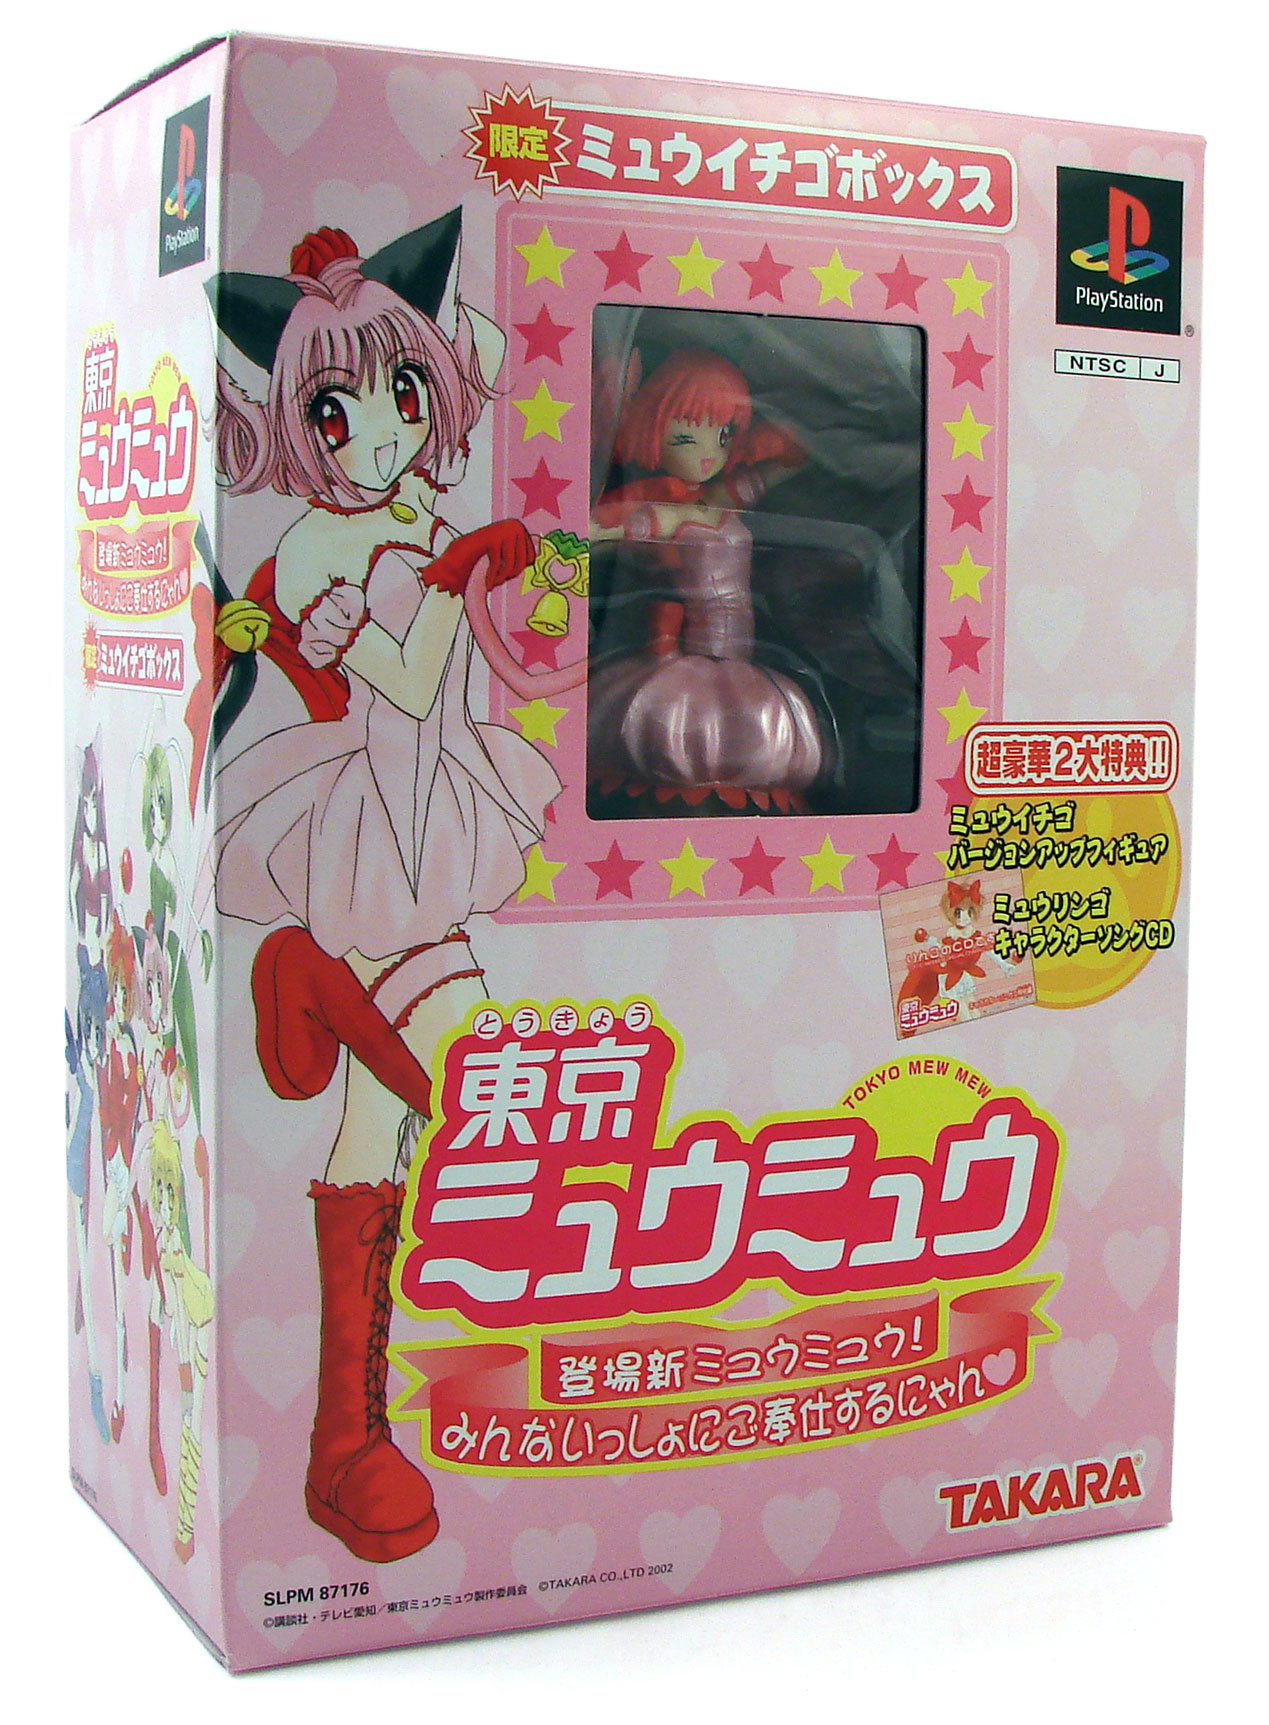 Tokyo Mew Mew (Mew Ichigo Box) [Limited Edition] for PlayStation 